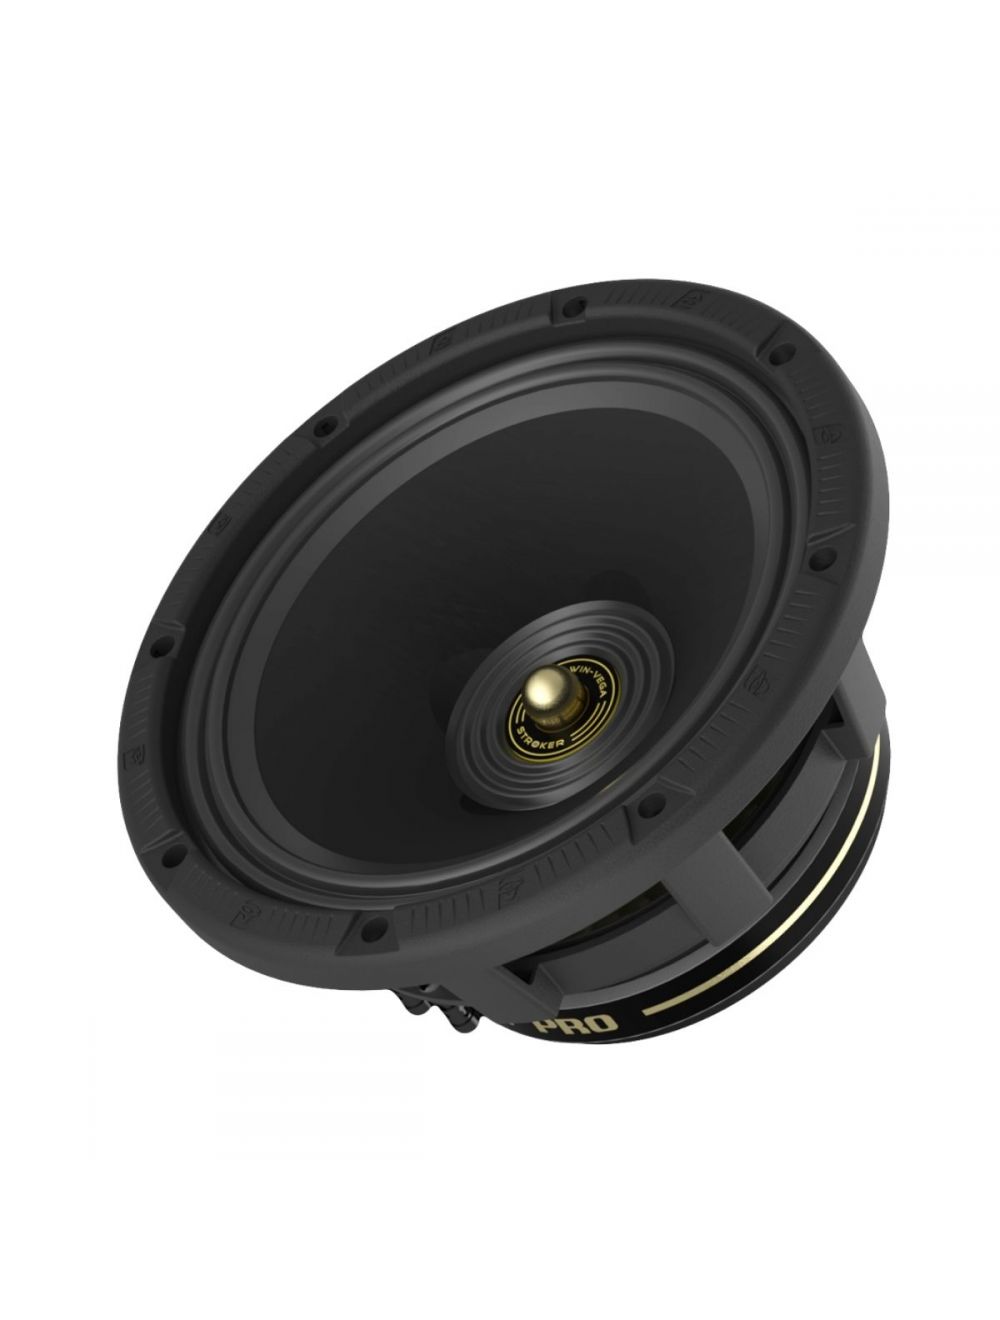 CVMPCL6.5 - 6.5 Inch Pro Full Range Speaker 200w Max/100W RMS Power Handing